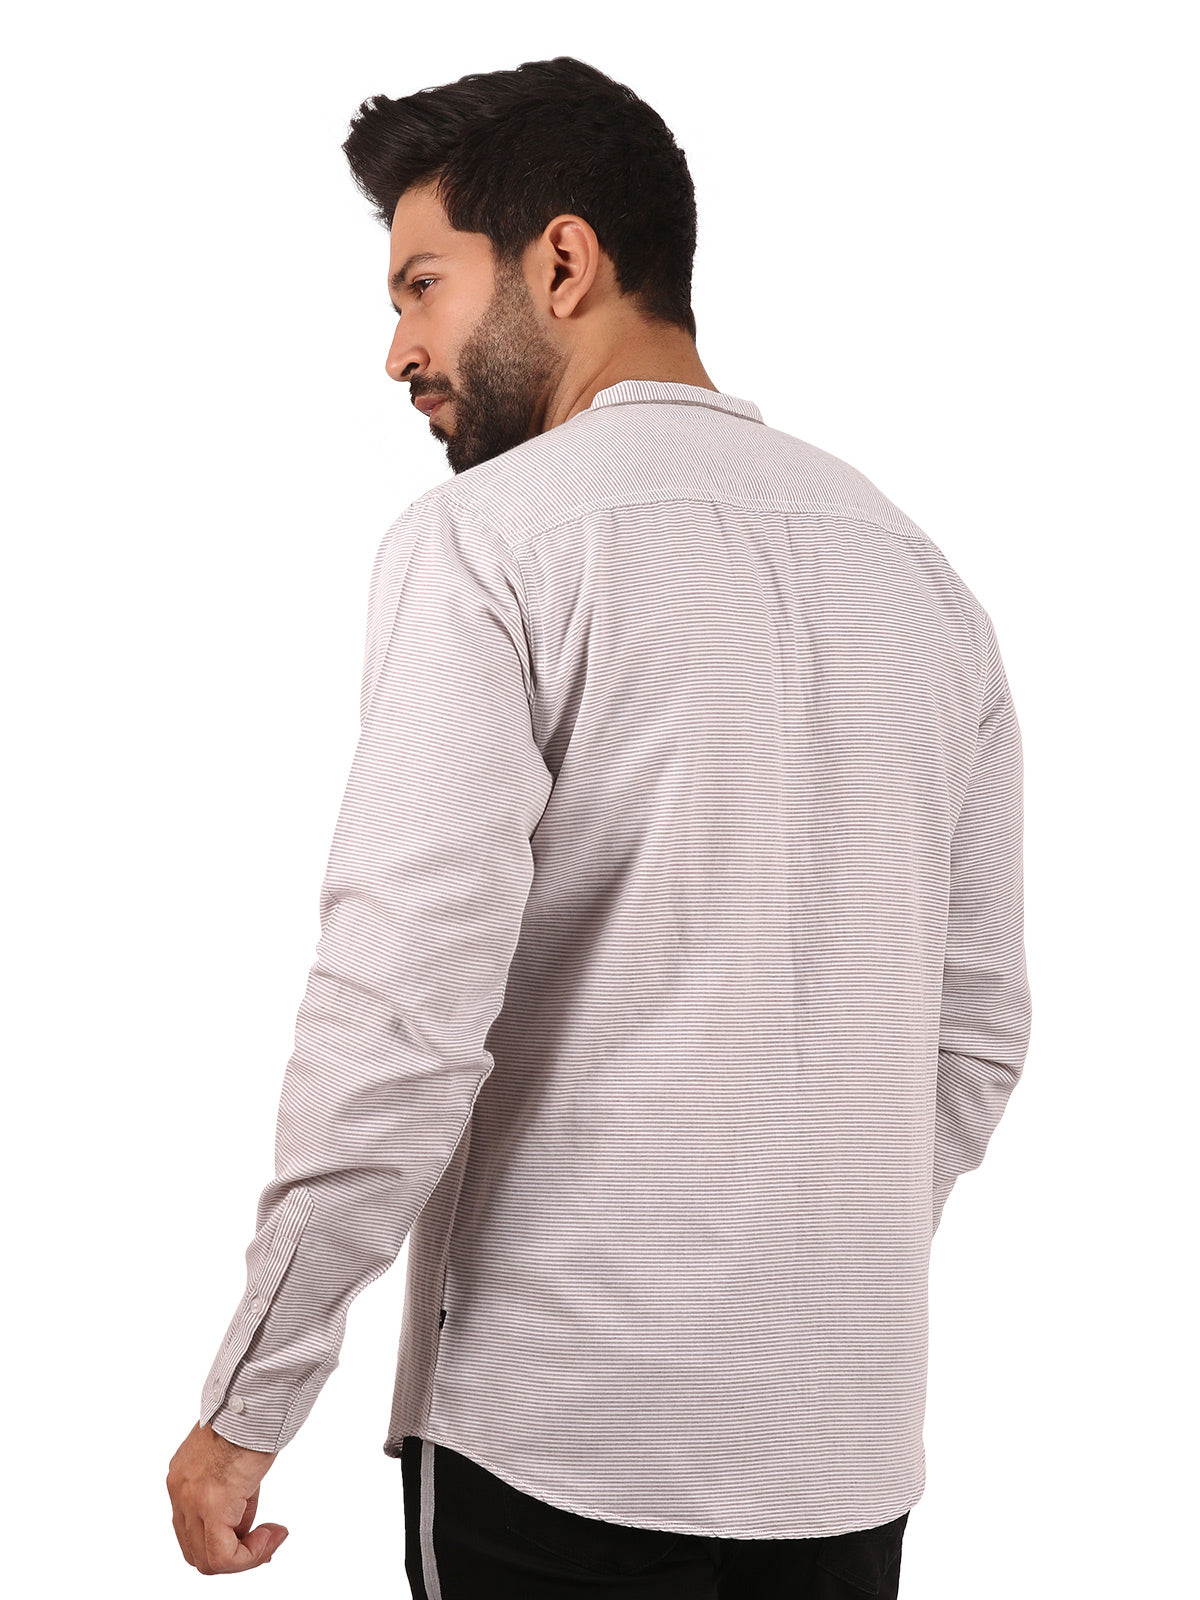 Men's Light Beige Casual Shirt - FMTS20-31312